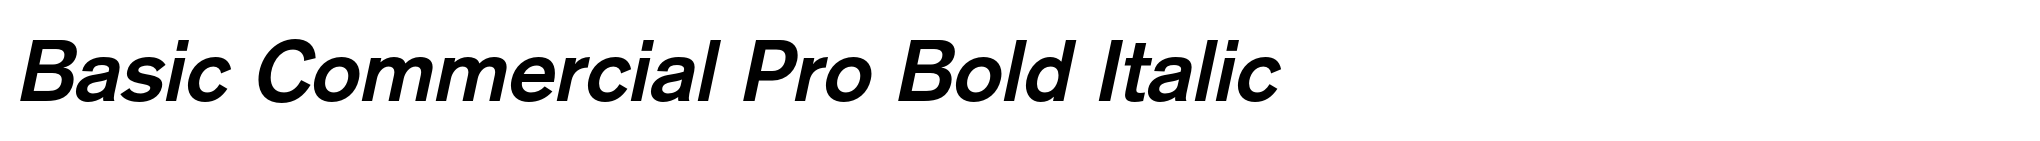 Basic Commercial Pro Bold Italic image